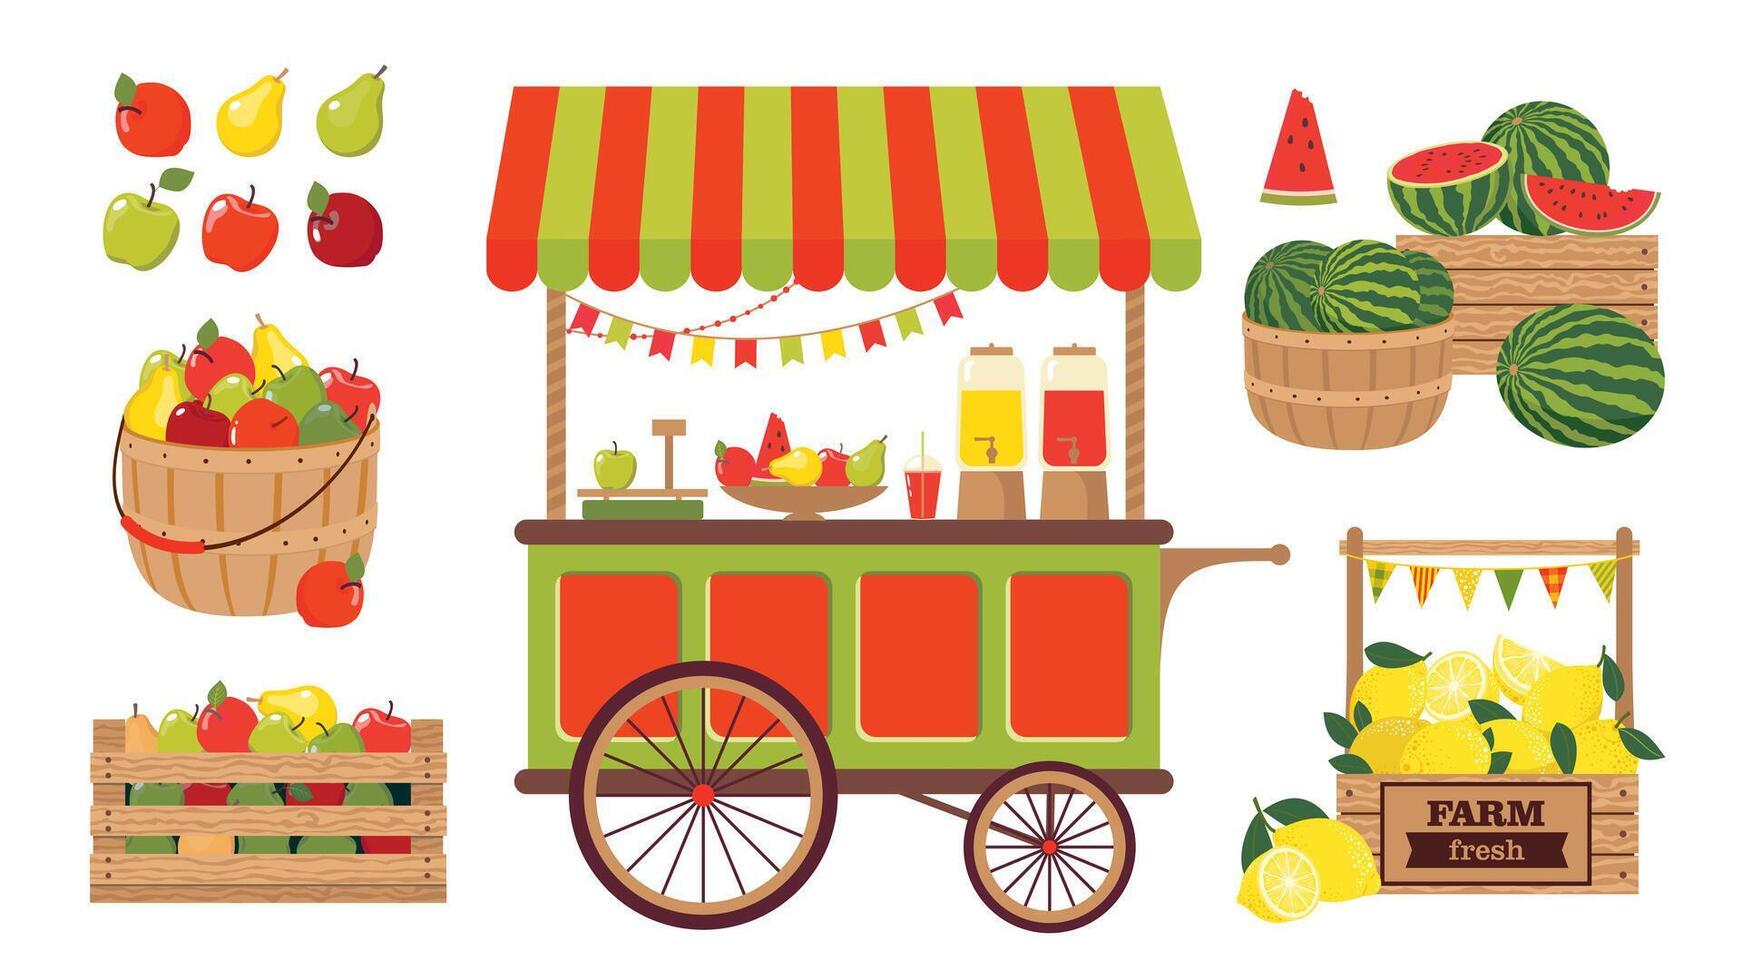 ein einstellen von Abbildungen von Bauernhof Gemüse, Früchte und ein Straße Einkaufen Wagen. ein Landwirte Stall mit lokal Lebensmittel. Wassermelonen, Äpfel, Zitronen im das Sortiment. Vektor Clip Art.